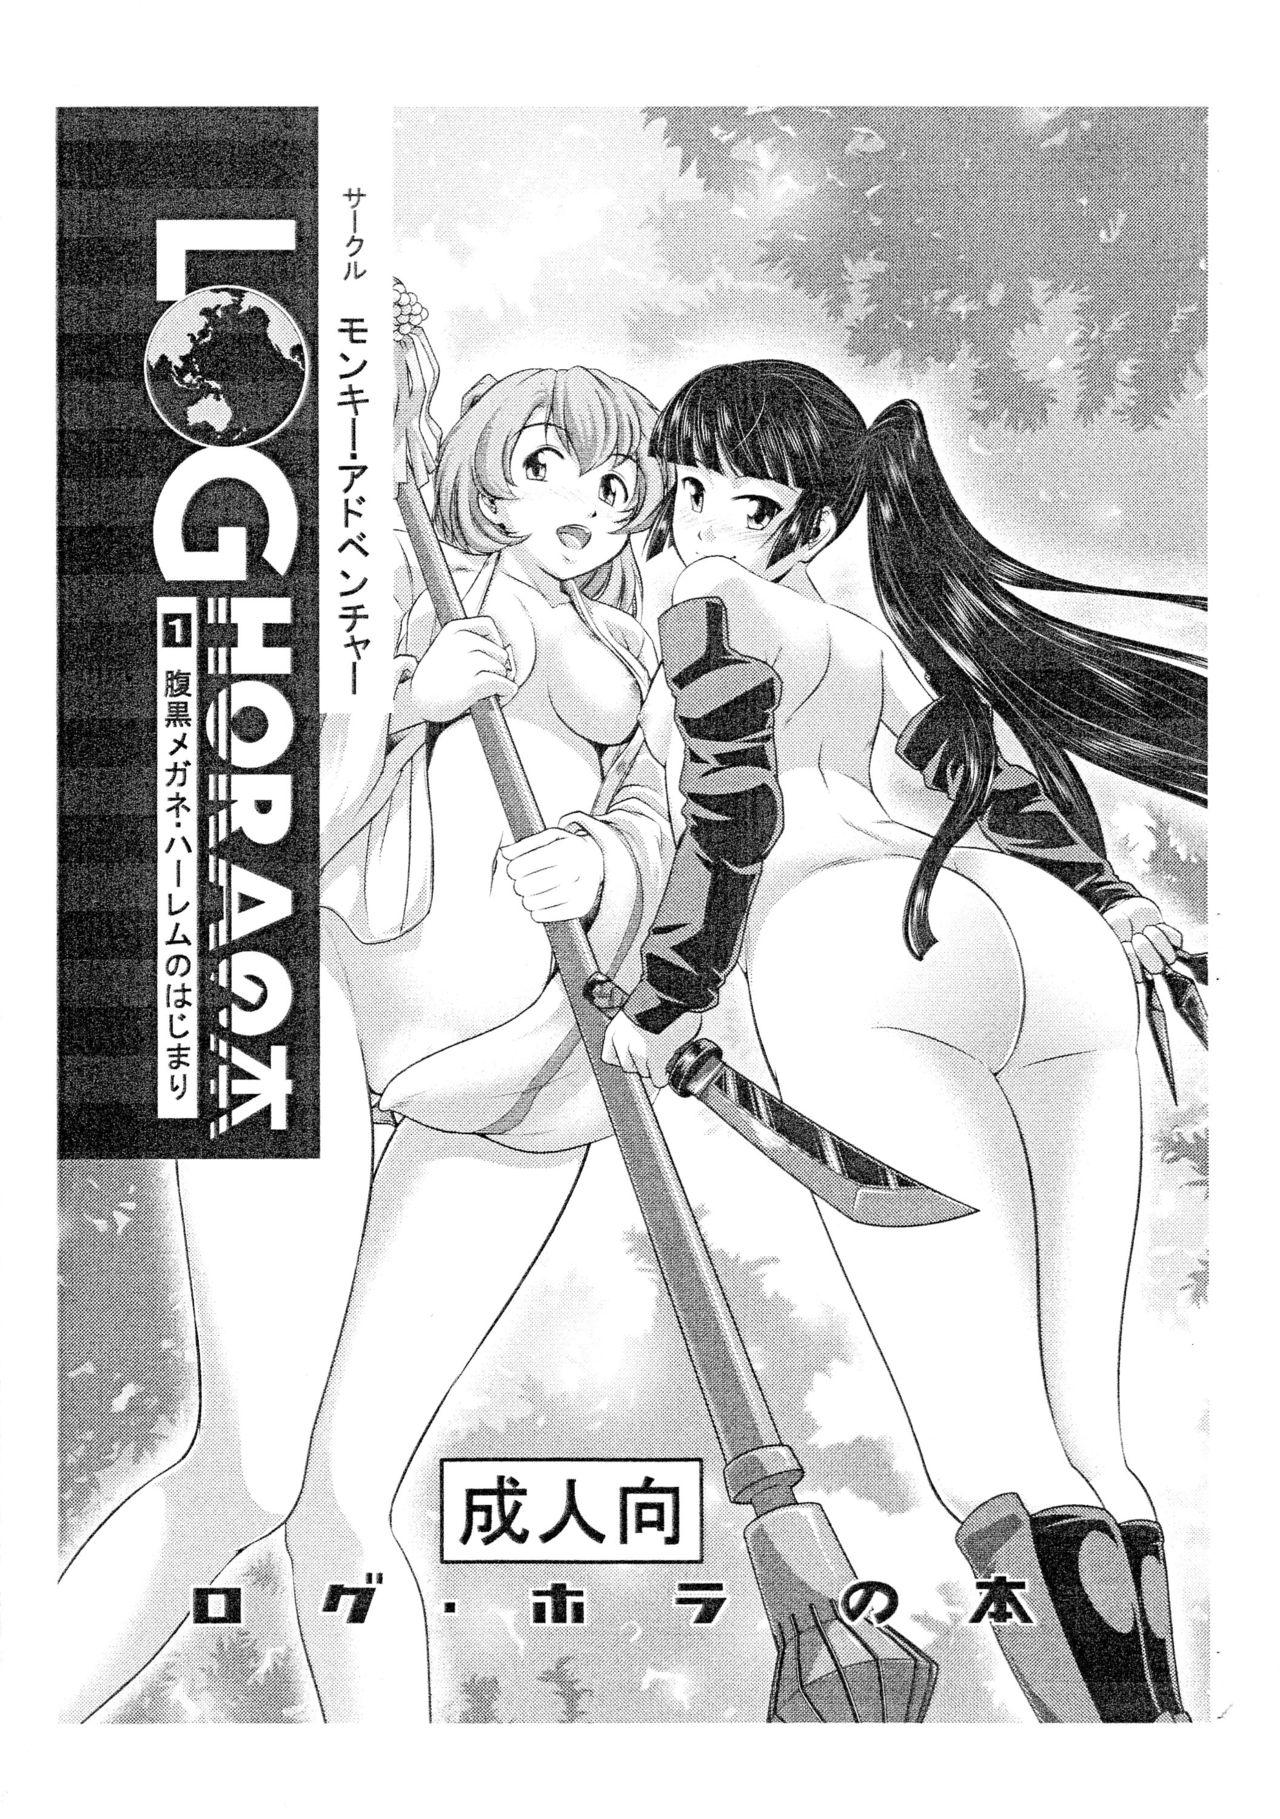 Petite LOGHORA no Hon 1 - Haraguro Megane Harem no Hajimari - Log horizon 3way - Page 1